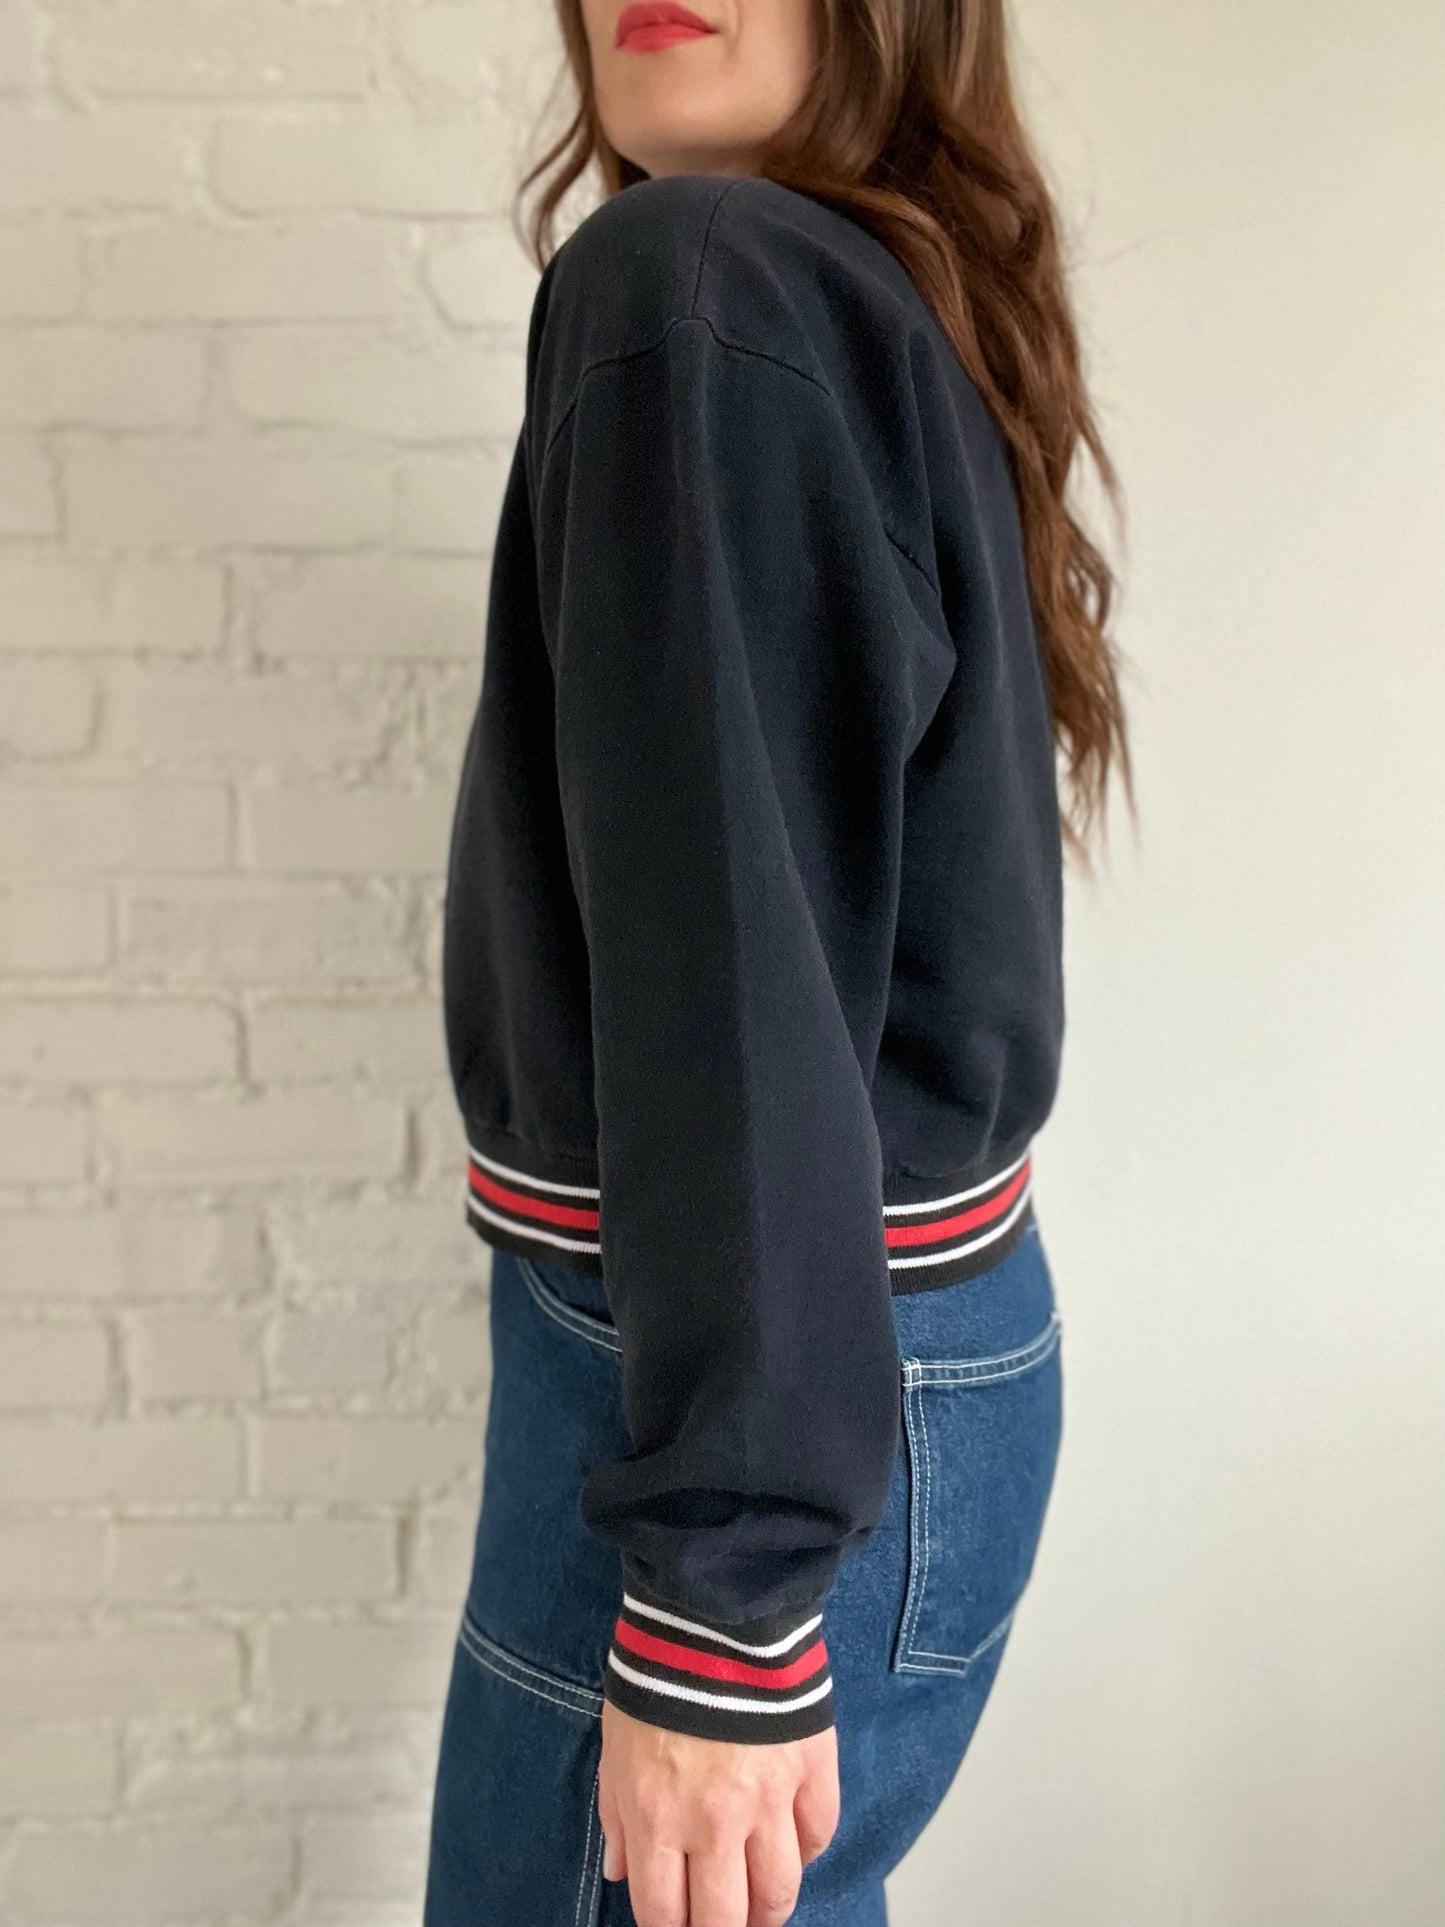 Boca Crop Sweater - Size L